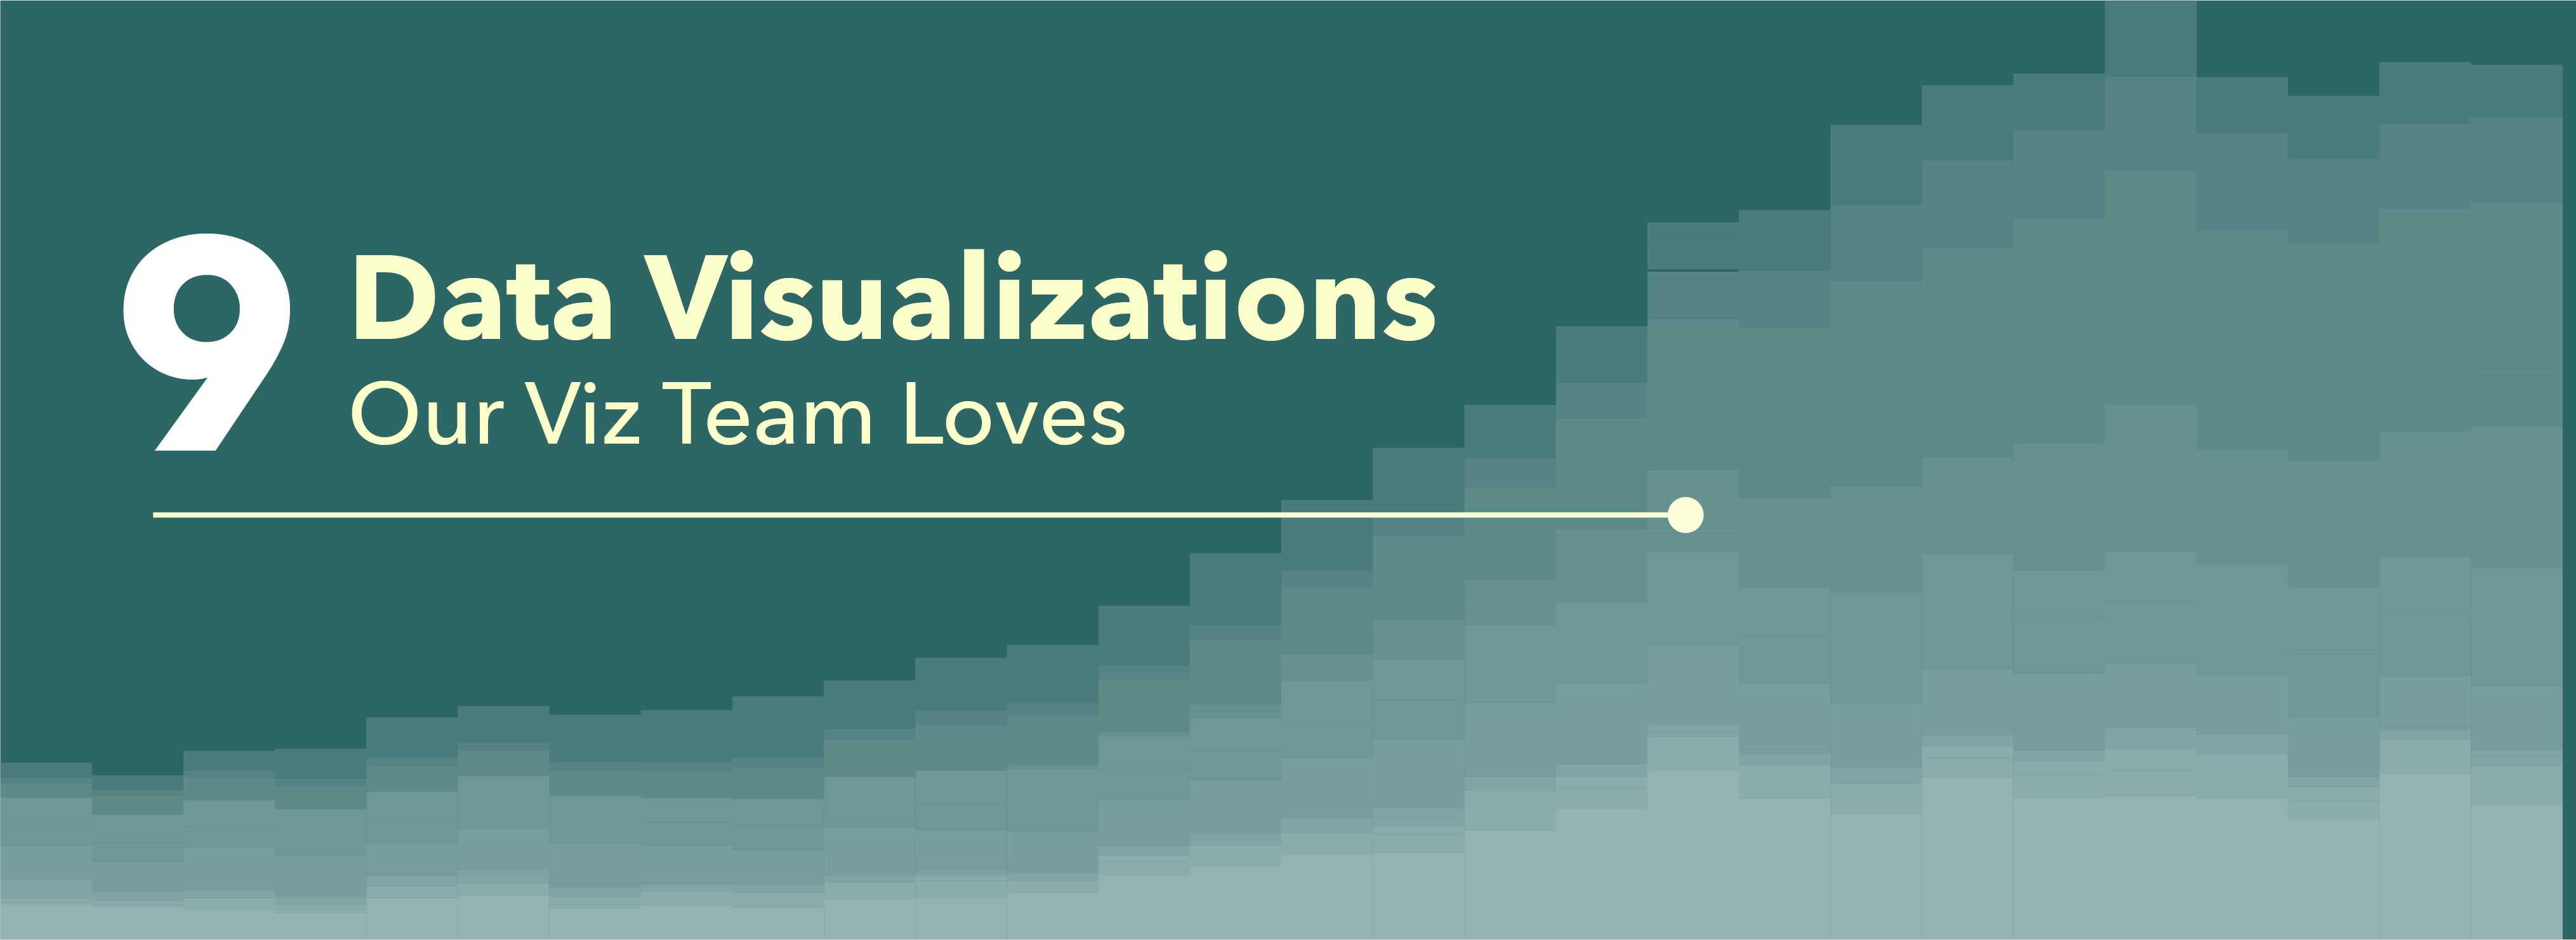 9 Data Visualizations our viz team loves